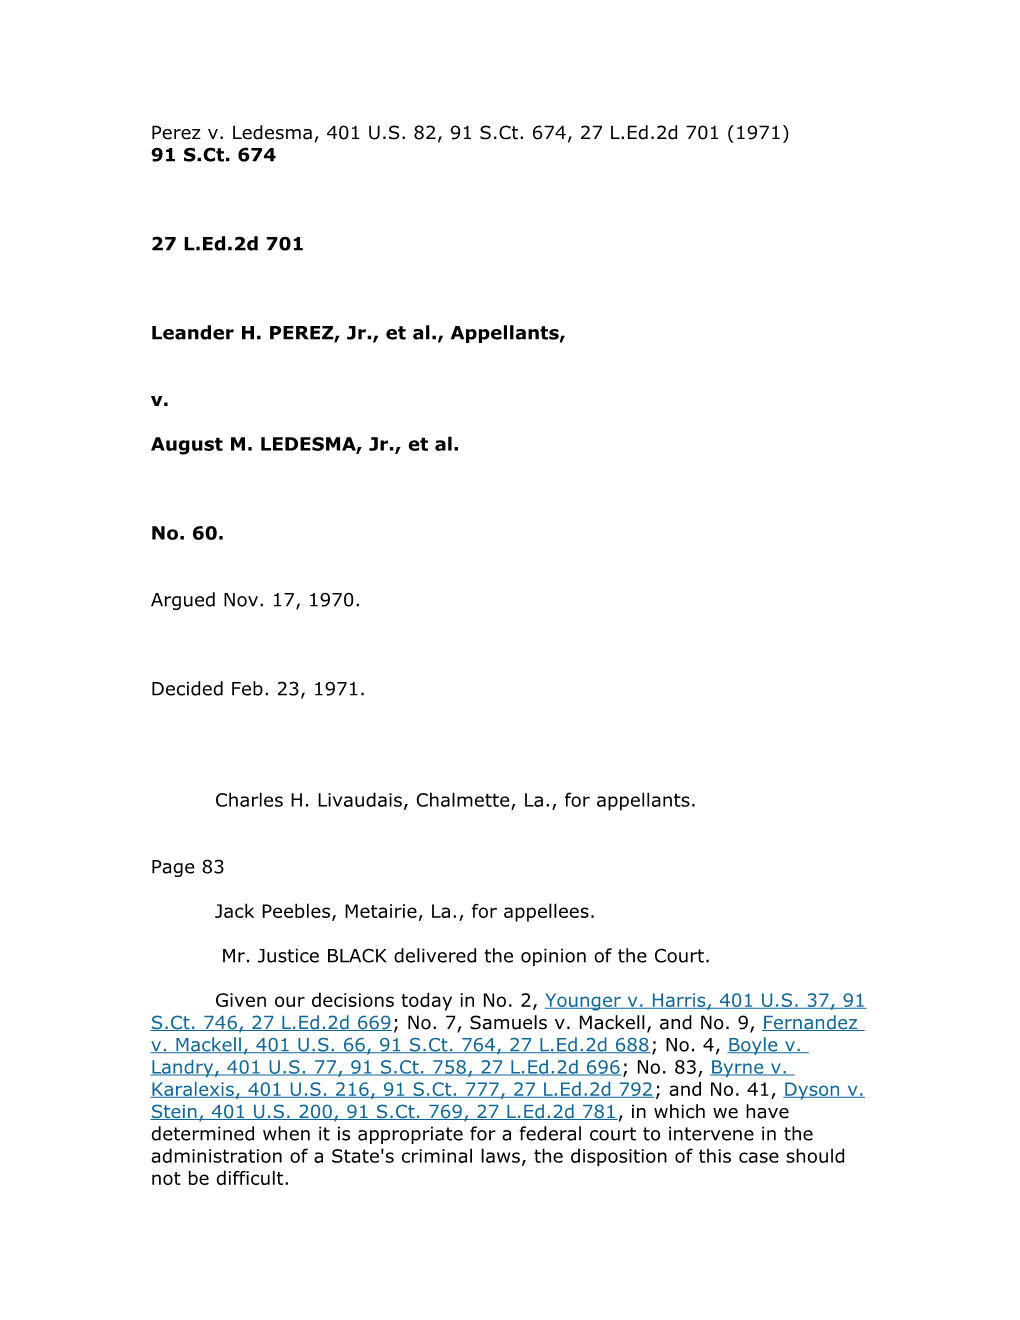 Leander H. PEREZ, Jr., Et Al., Appellants